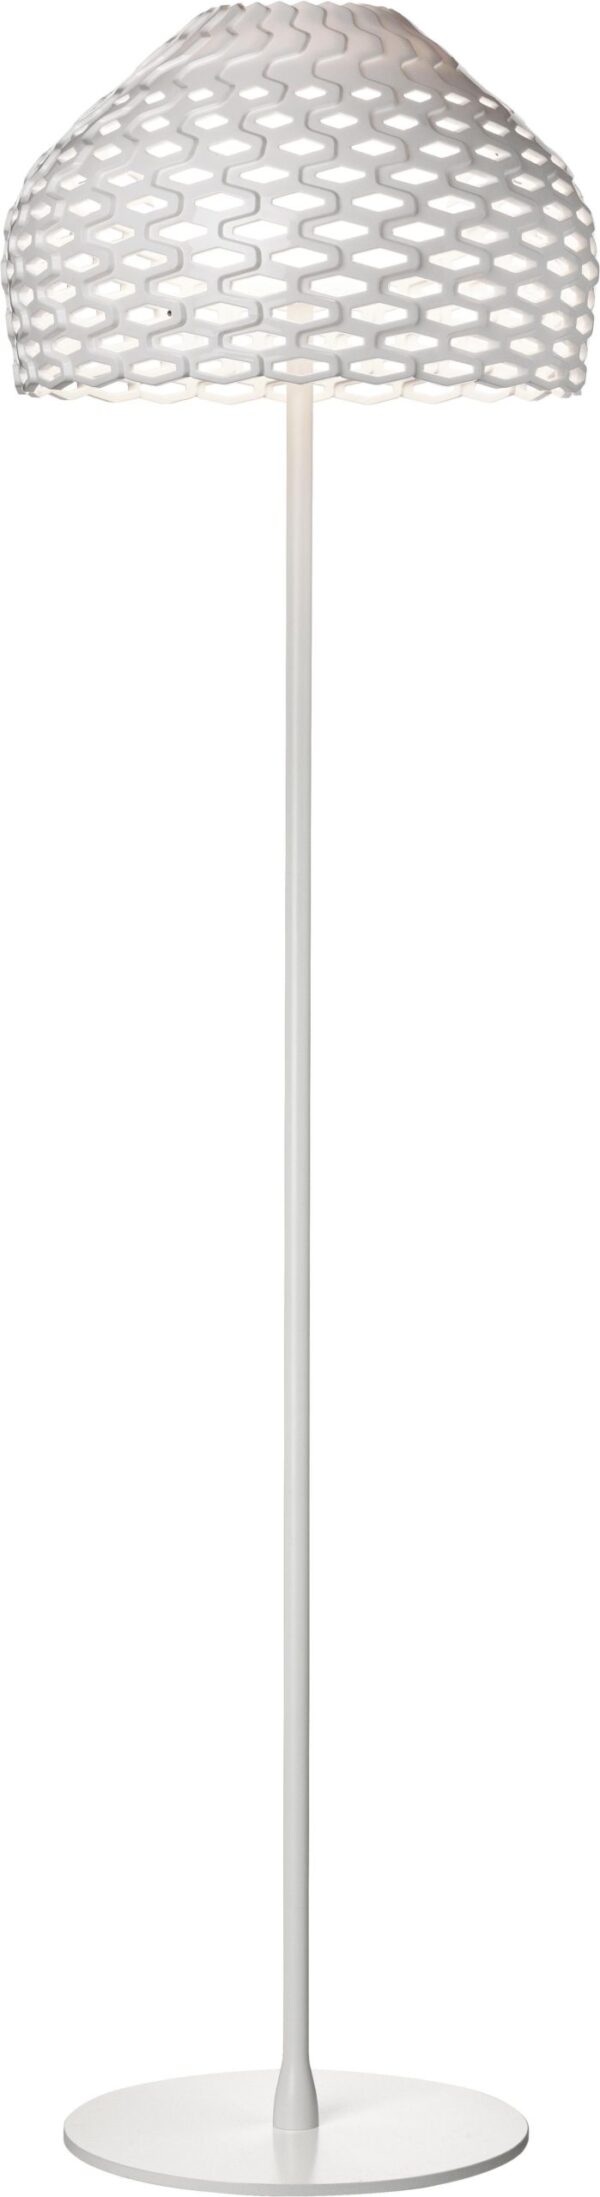 Λάμπα δαπέδου Tatou F - H 180 cm Λευκό Flos Patricia Urquiola